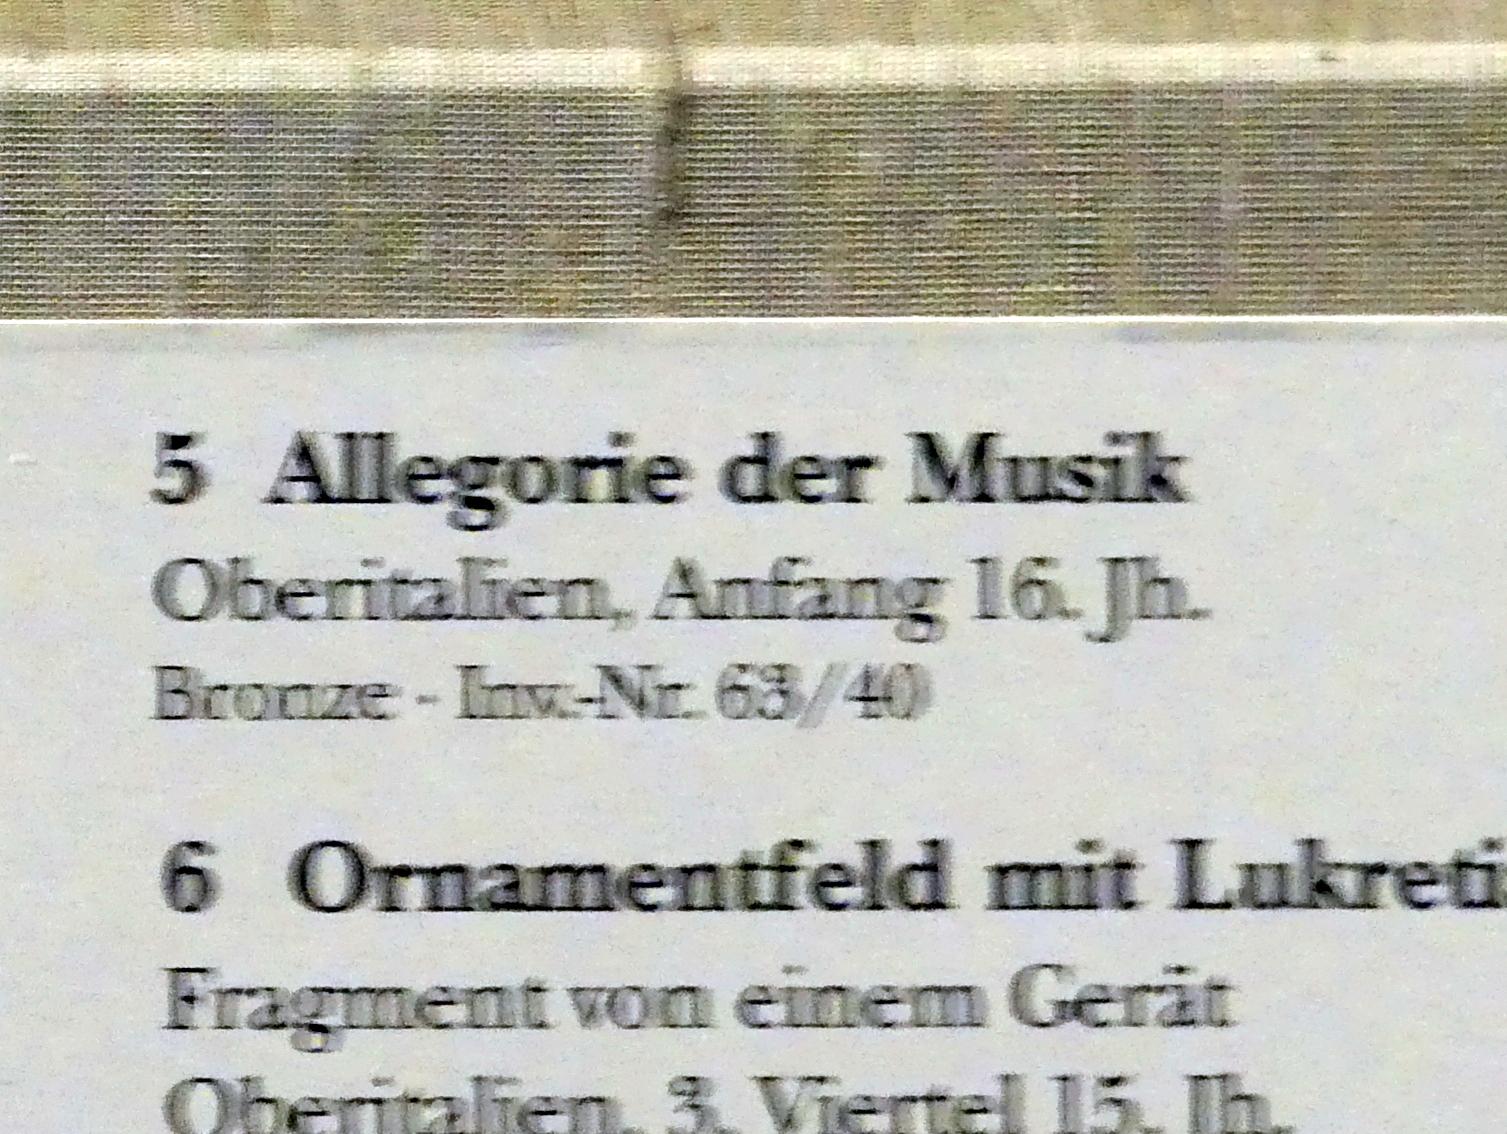 Allegorie der Musik, München, Bayerisches Nationalmuseum, Saal 23, Beginn 16. Jhd., Bild 2/2